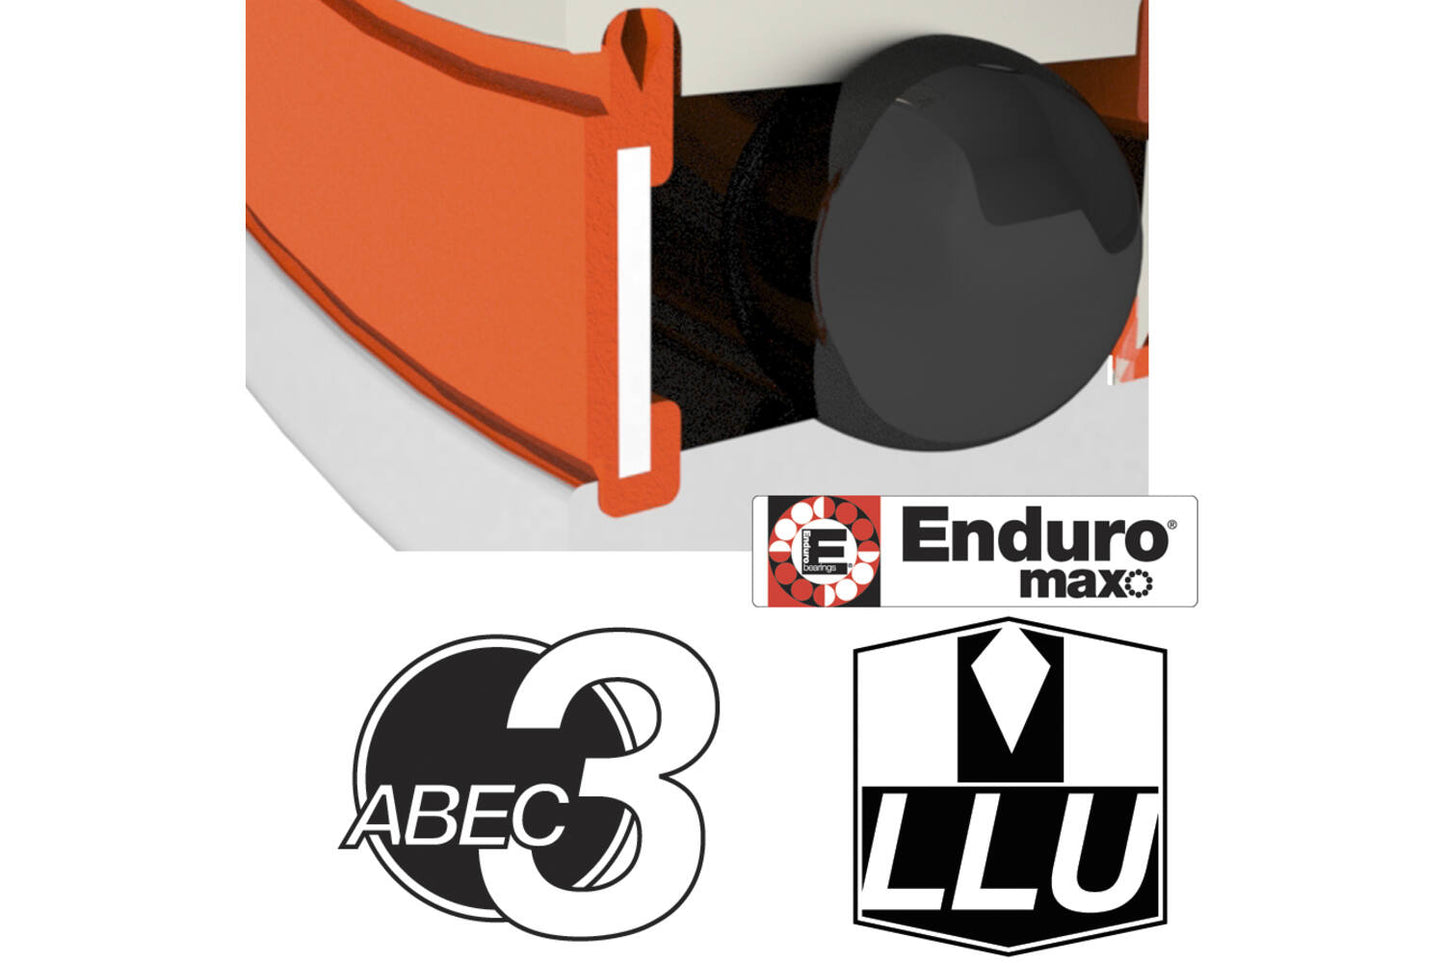 Enduro Lager f6902 llu eb 15x28x7 9.5 abec 3 max